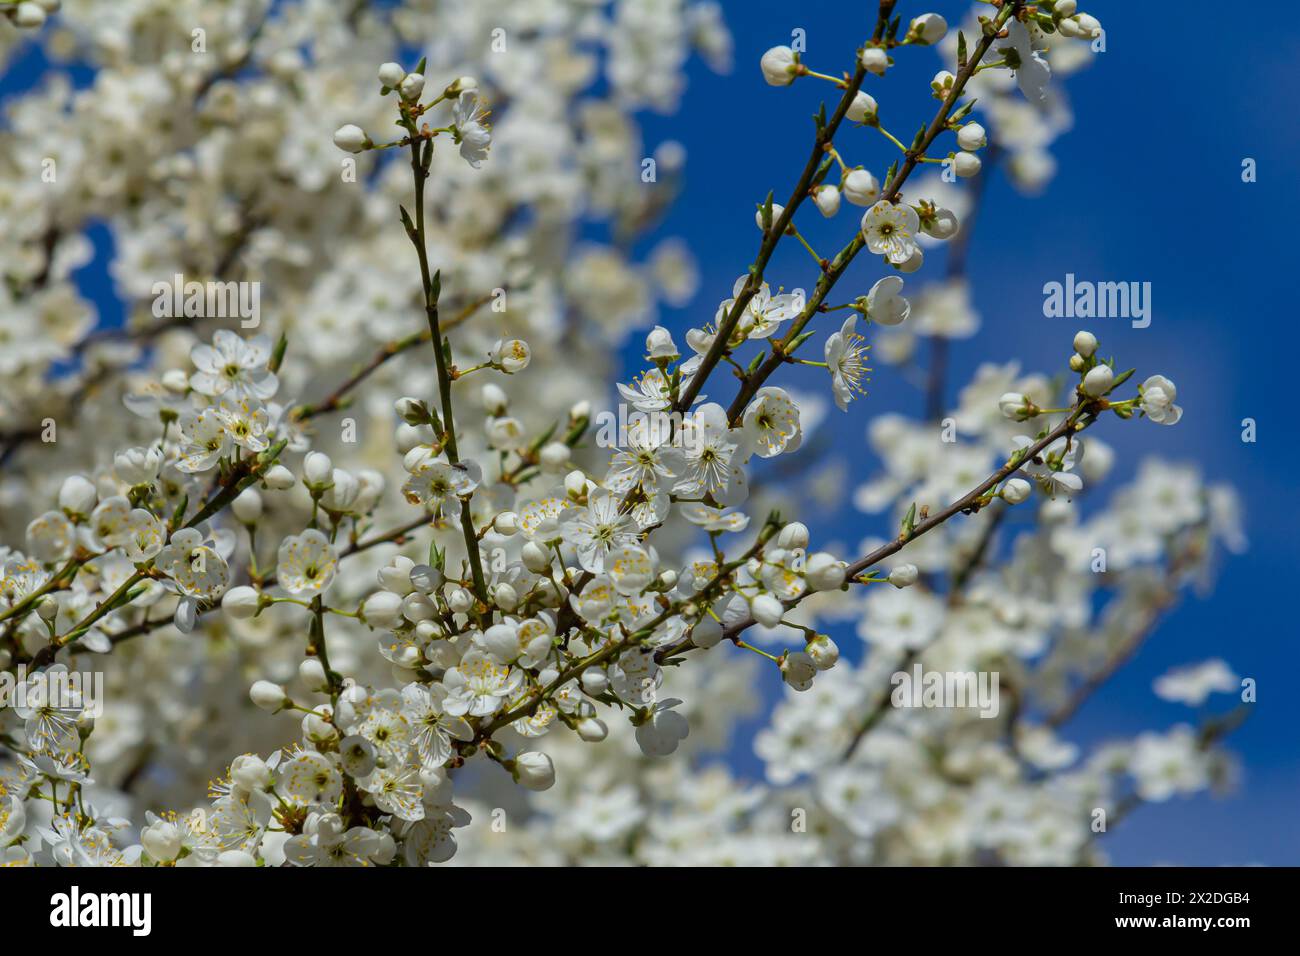 White plum blossom, beautiful white flowers of prunus tree in city garden, detailed macro close up plum branch. White plum flowers in bloom on branch, Stock Photo